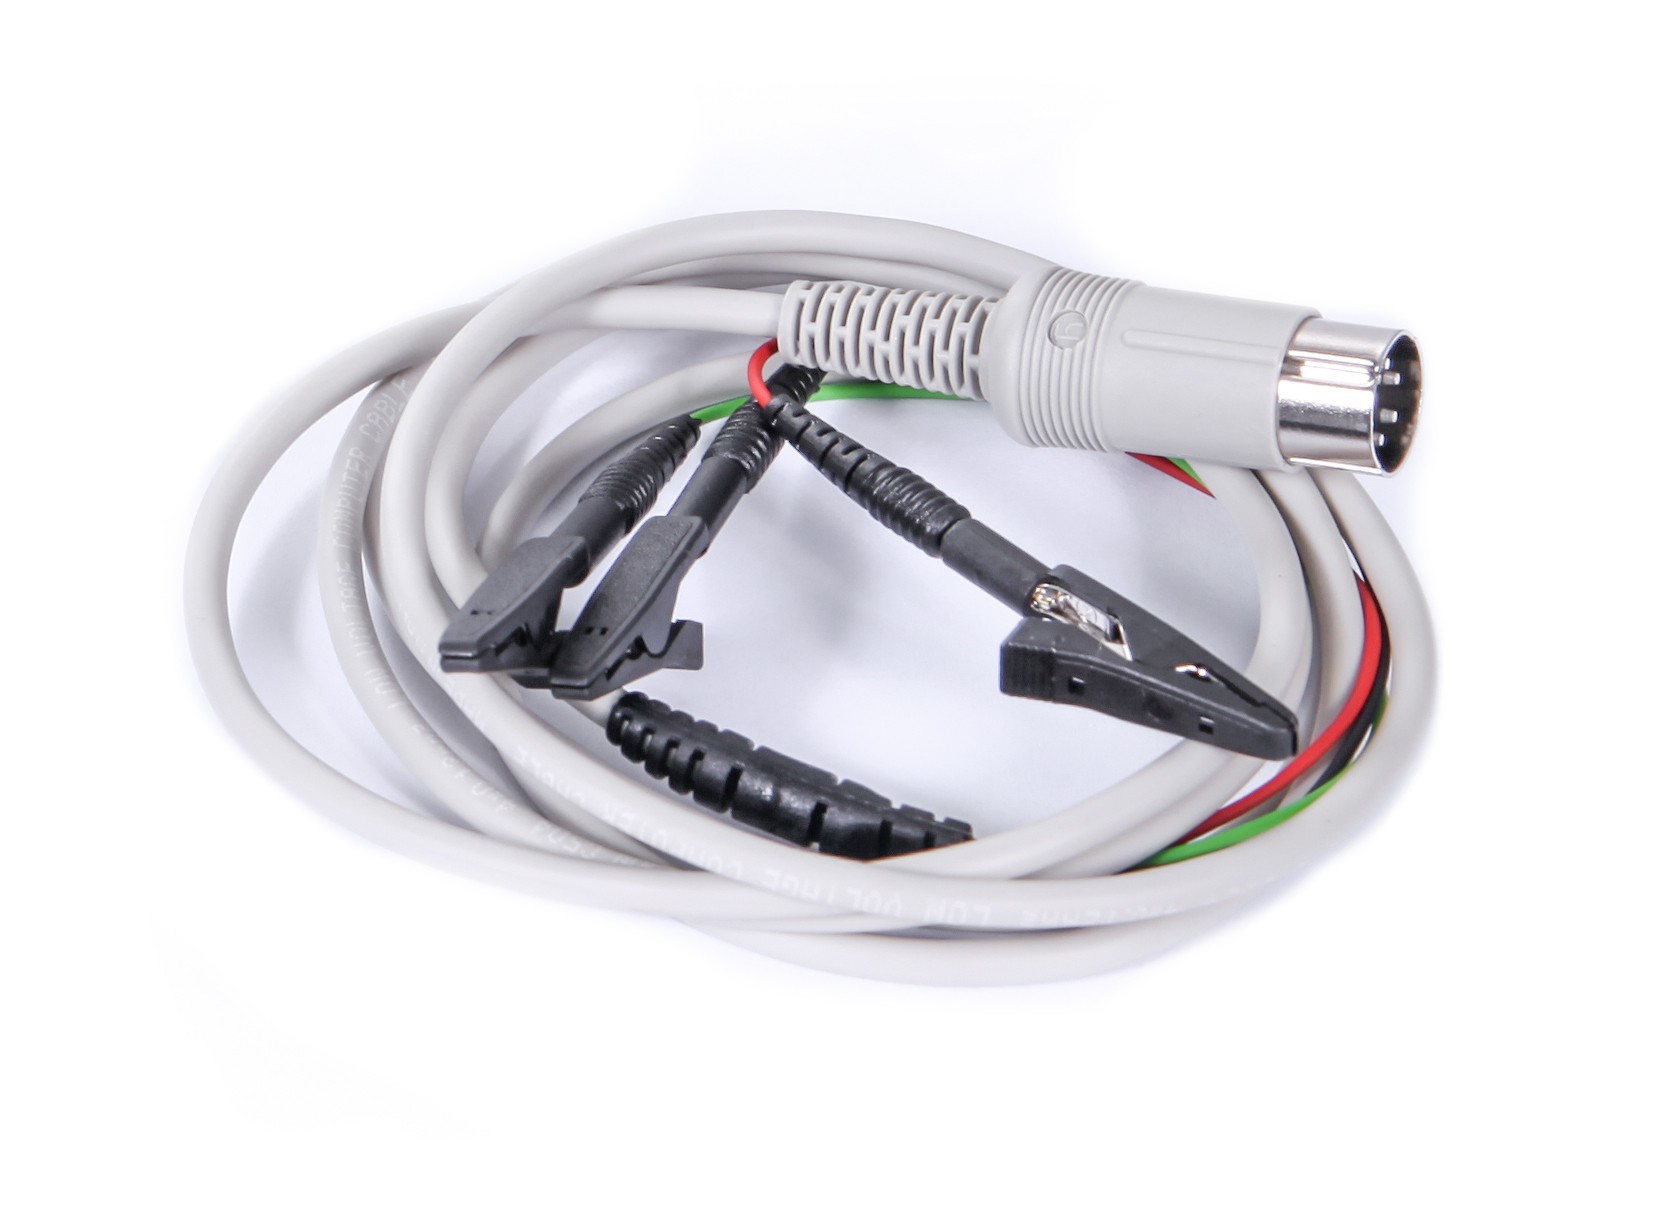 Kabel EMG z krokodylkami do jednorazowych elektrod powierzchniowych